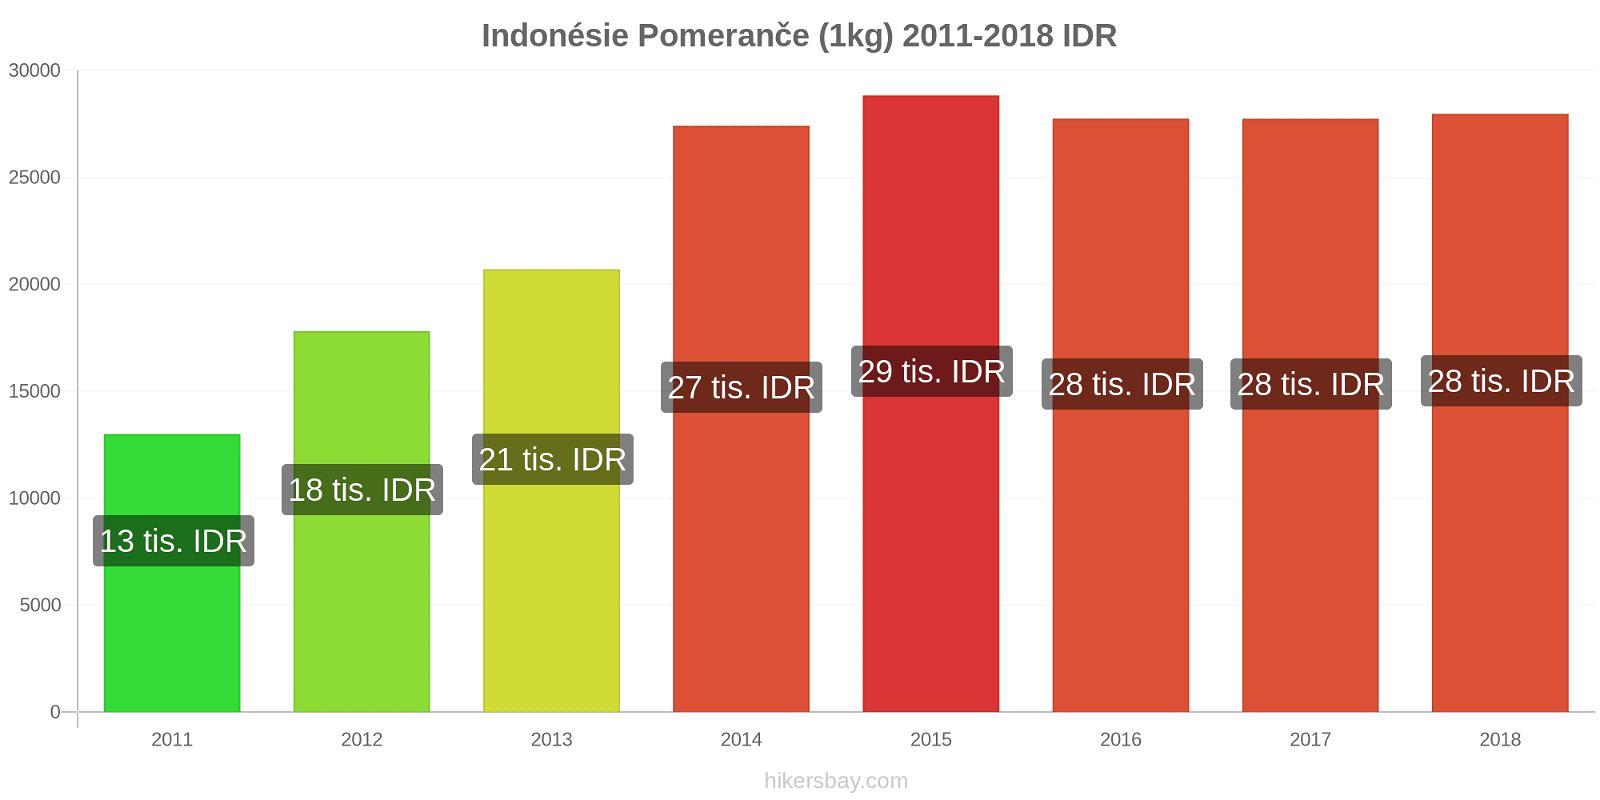 Indonésie změny cen Pomeranče (1kg) hikersbay.com